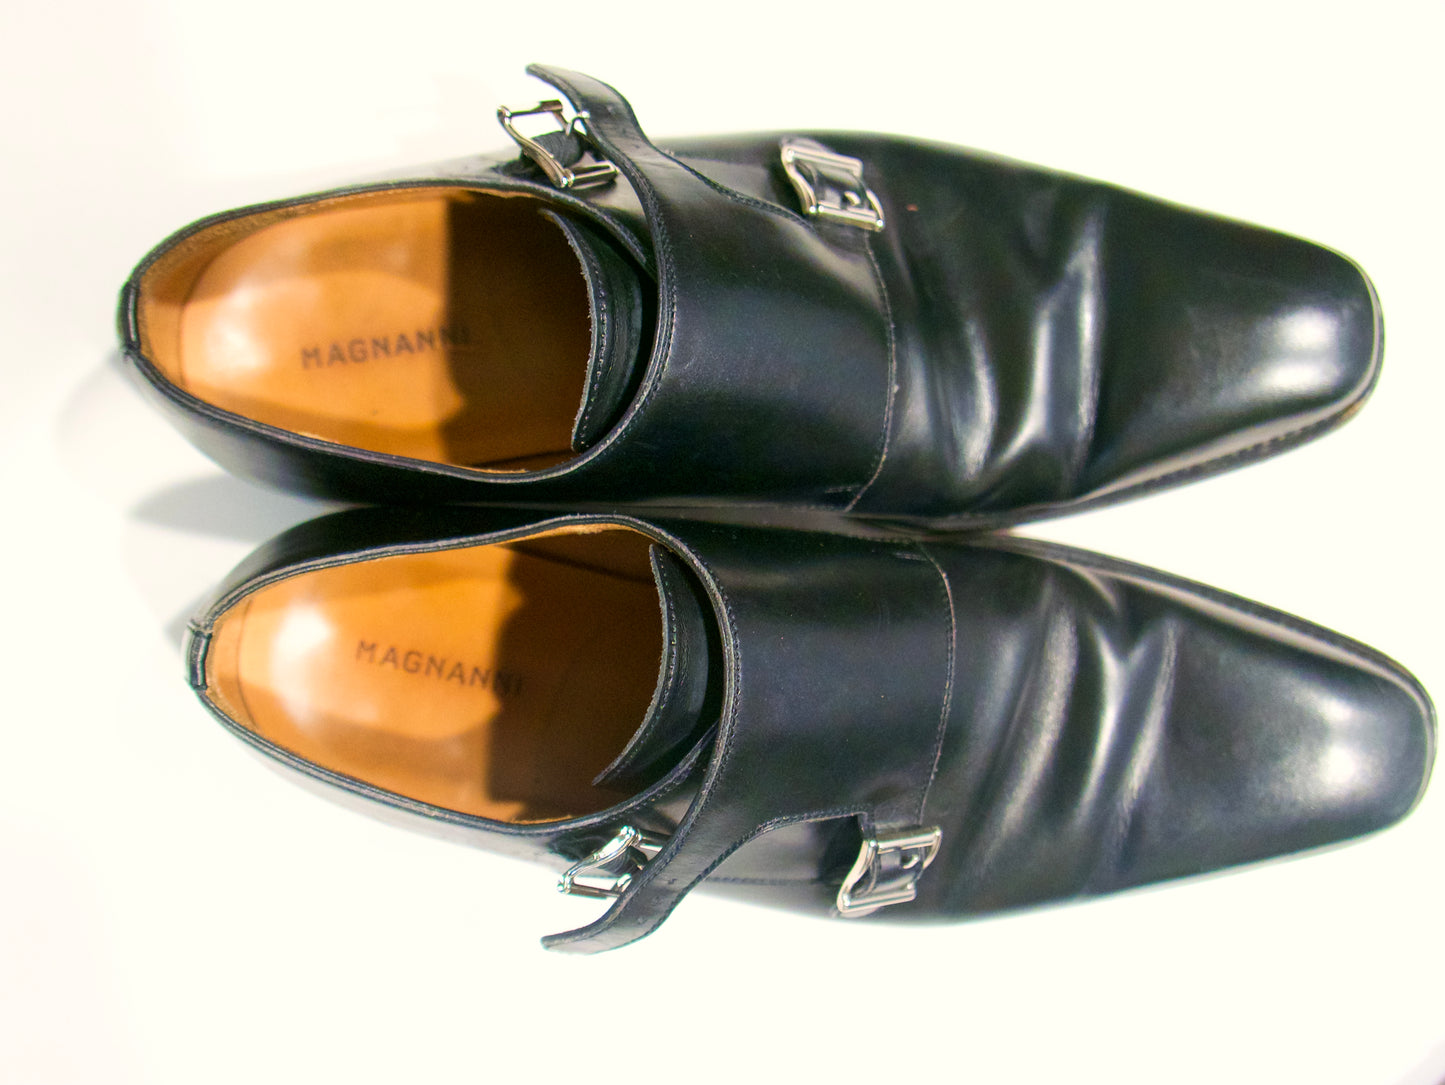 Magnanni Lucio Black Double Strap Monk Shoes, Size 10